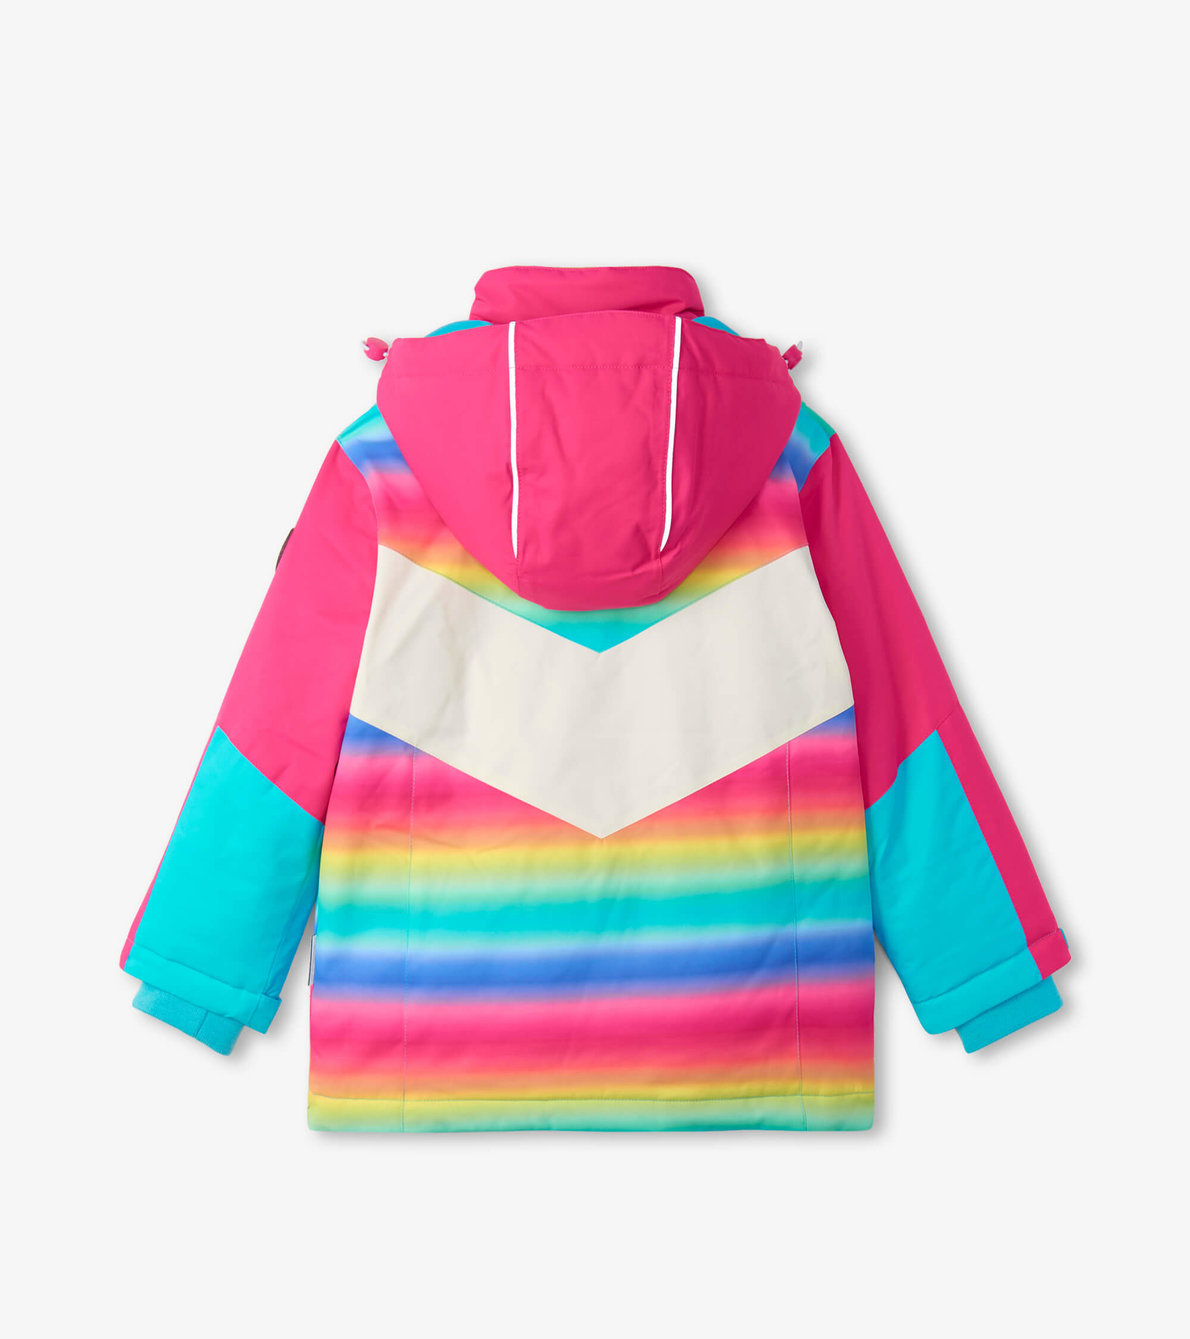 View larger image of Rainbow Sunshine Ski Jacket